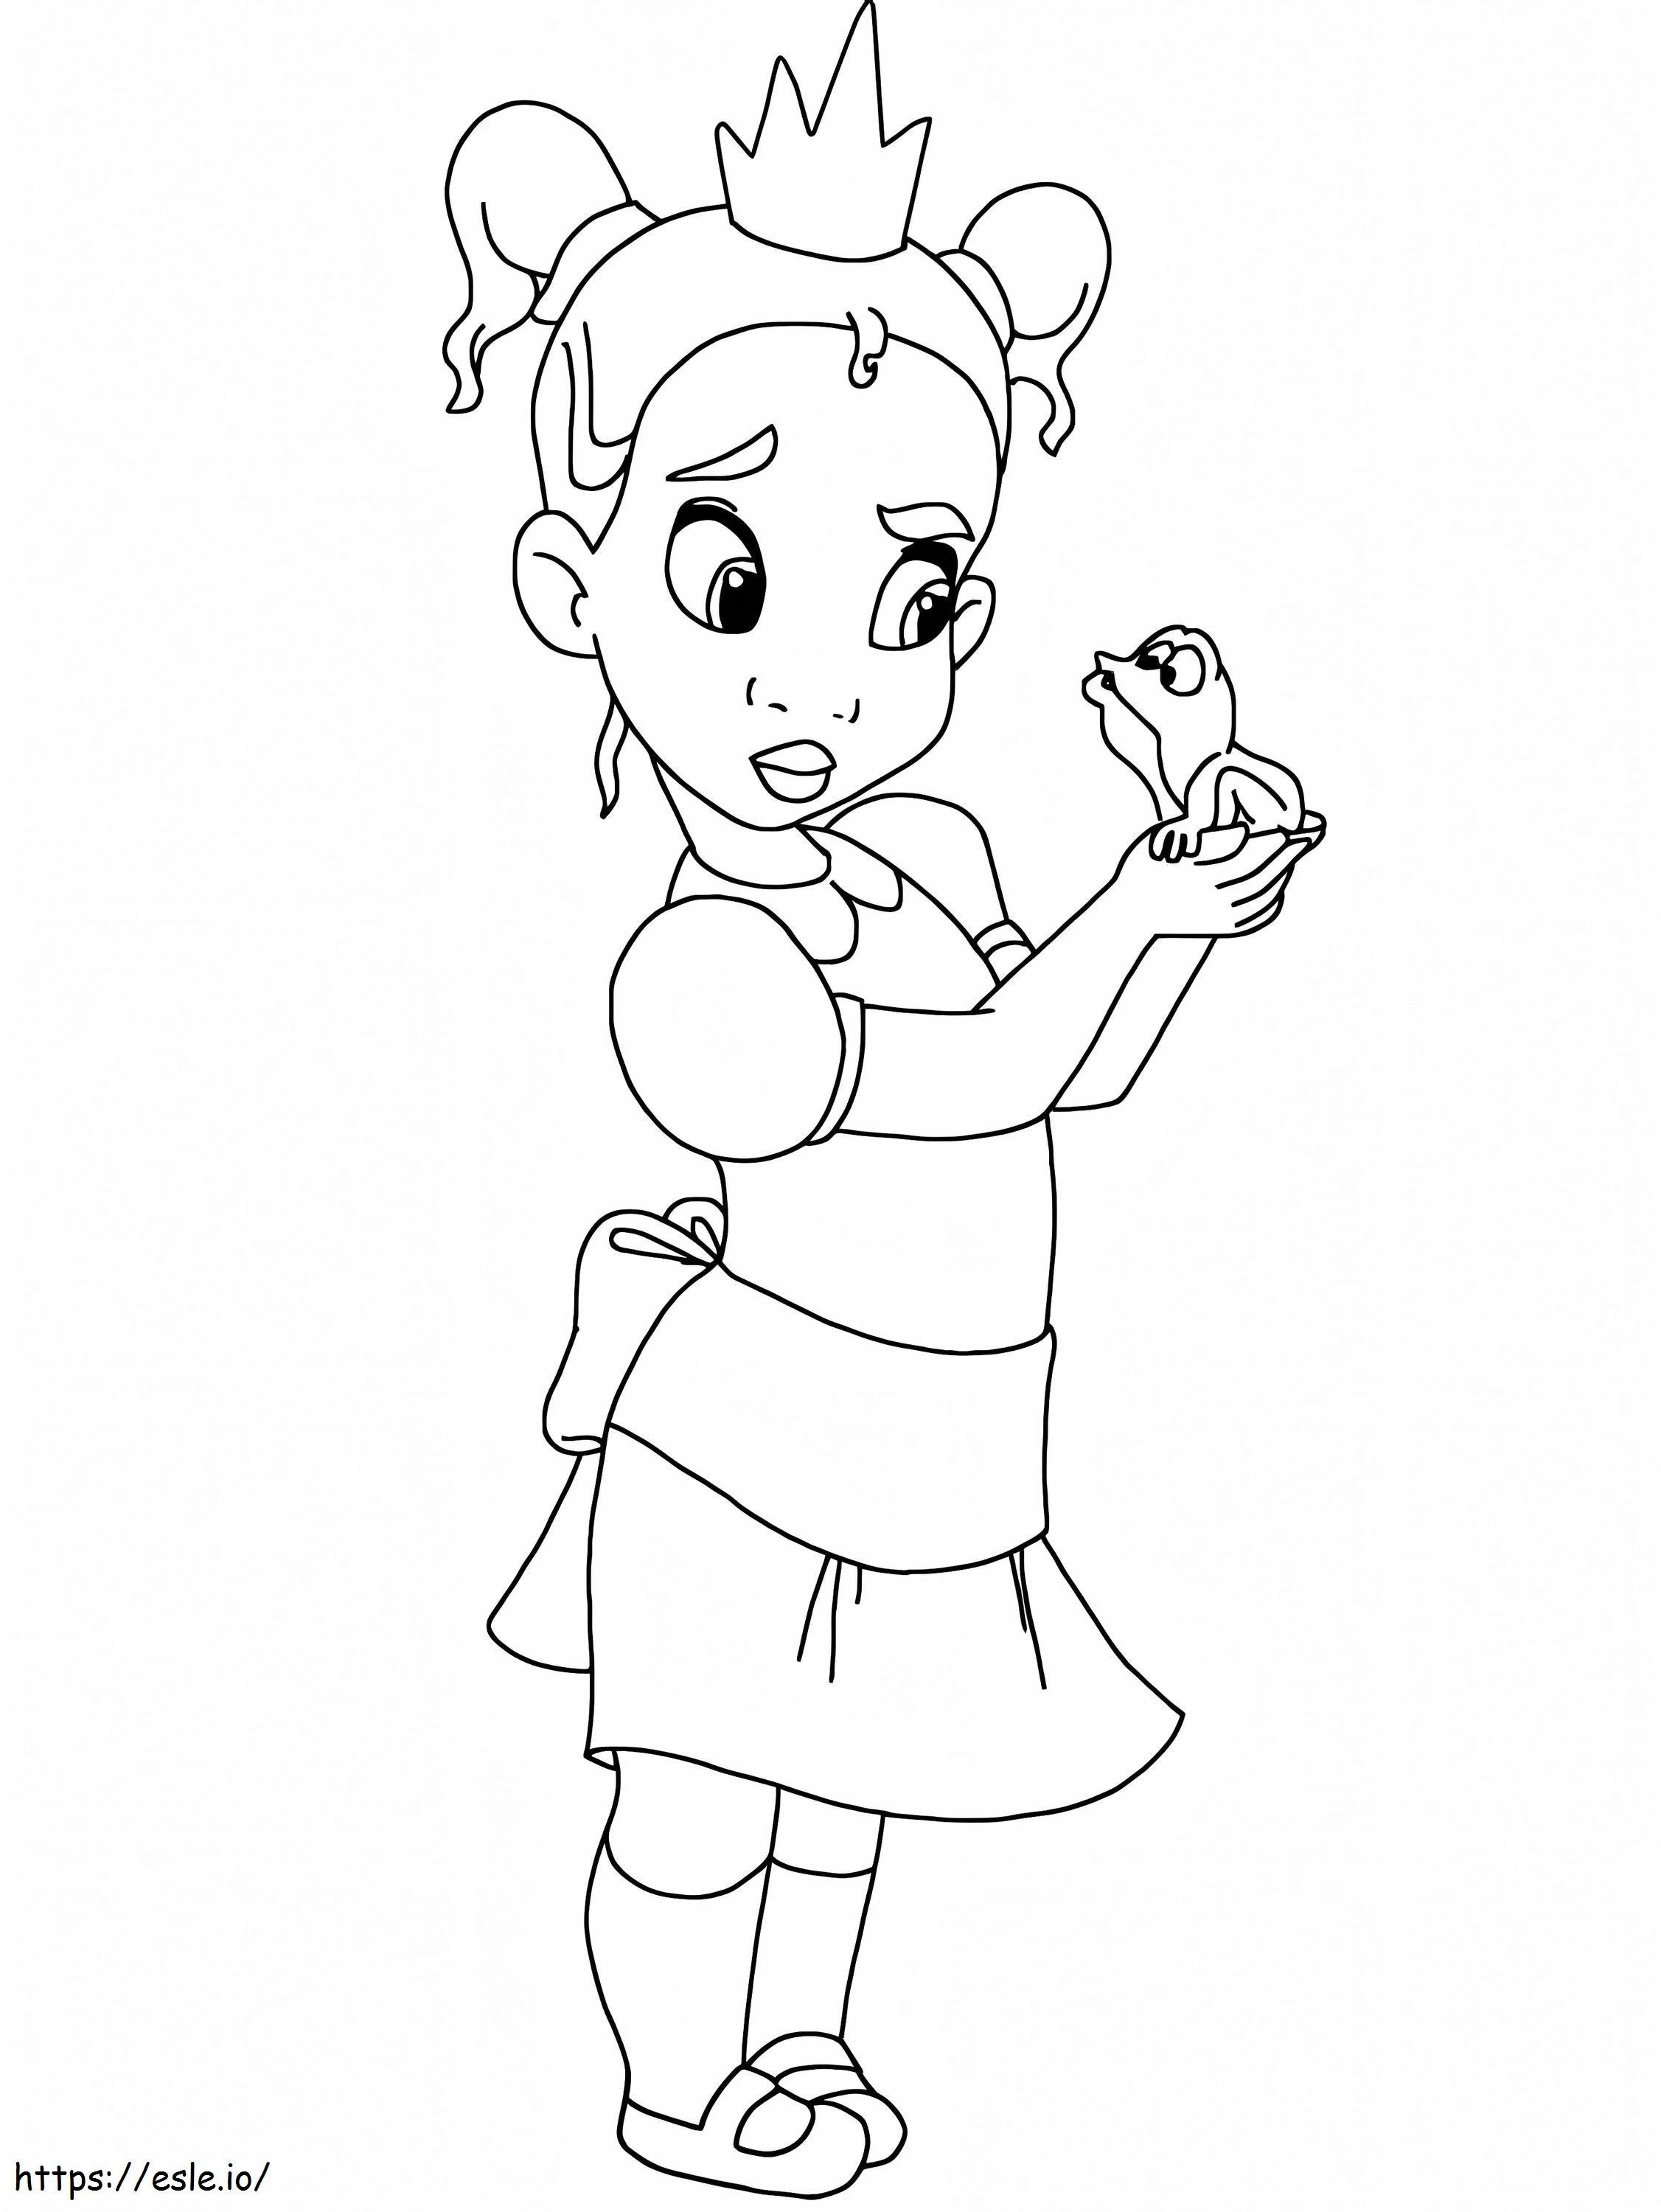 La pequeña princesa Tiana para colorear